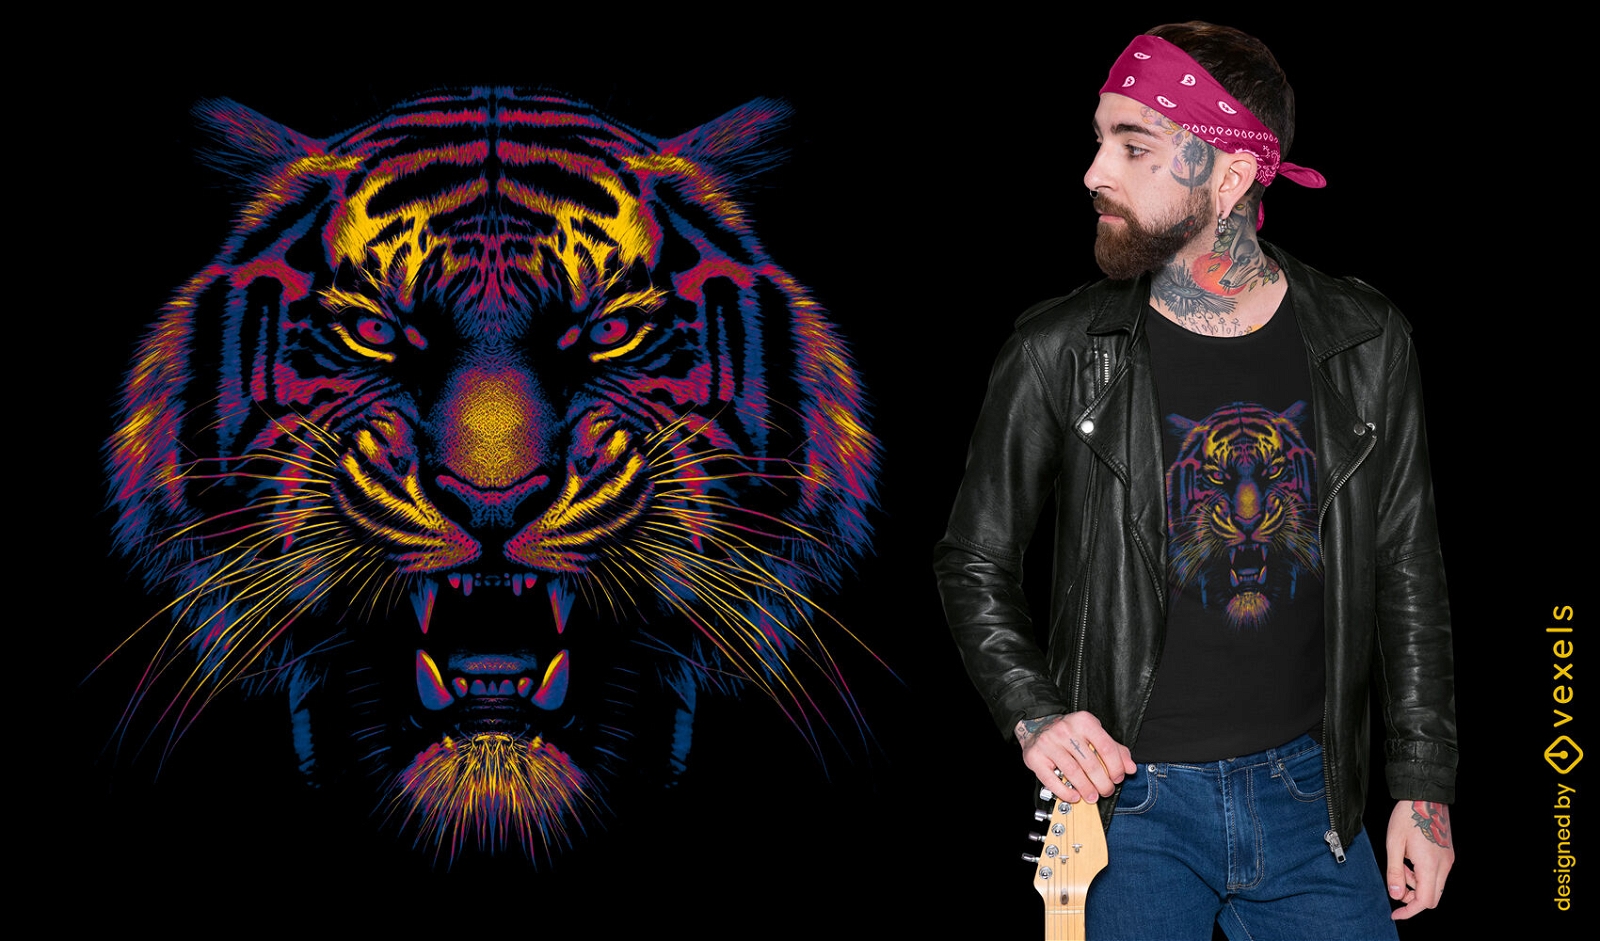 Diseño de camiseta con cara de tigre vibrante.